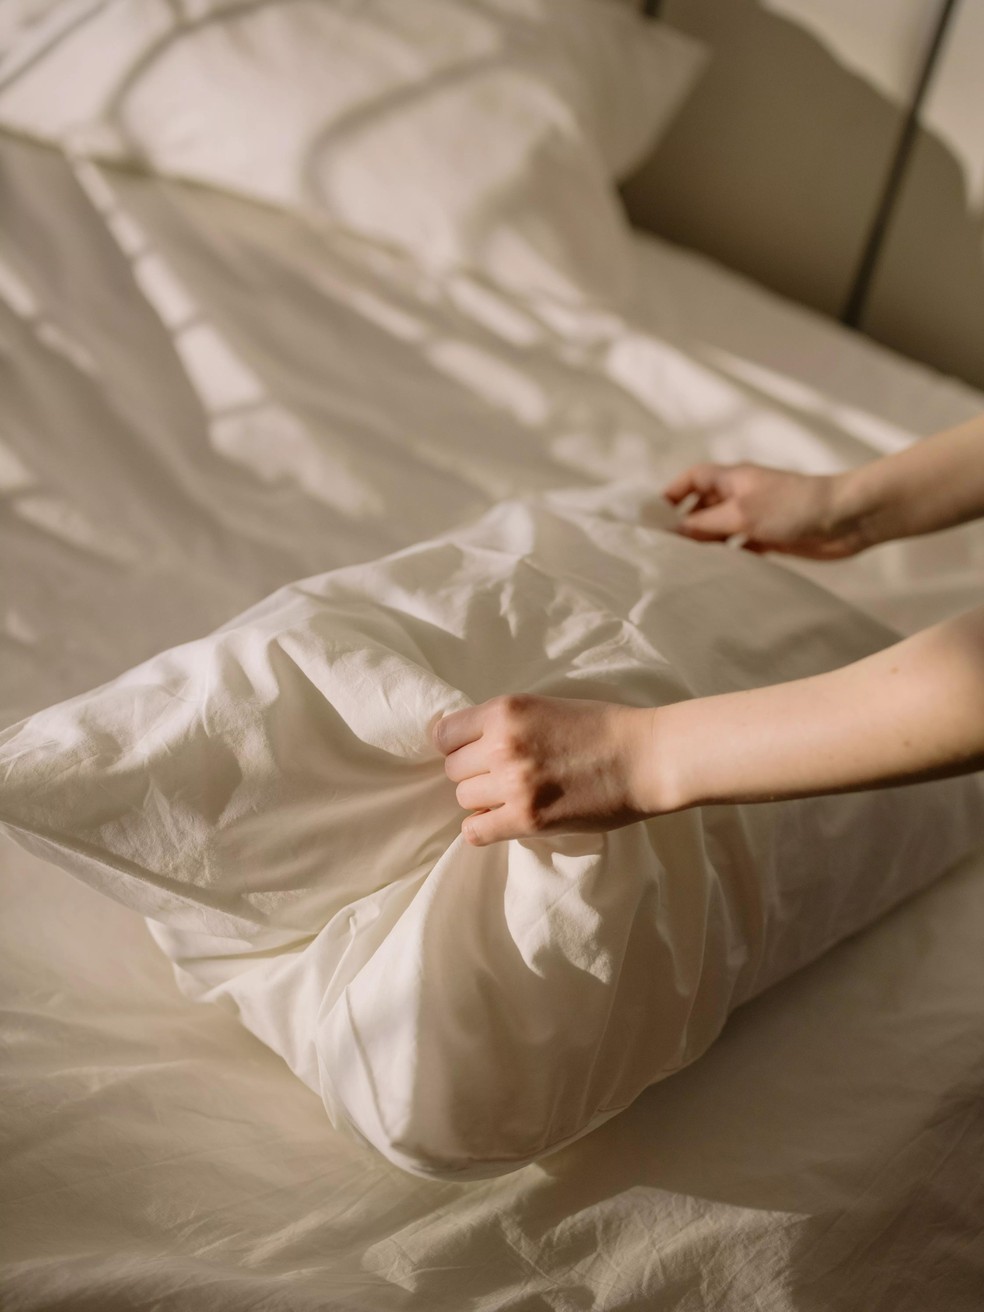 Após levantar, deve-se esperar de uma a duas horas para arrrumar a cama, evitando a propagação de ácaros  — Foto: Pexels/ cottonbro/ CreativeCommons